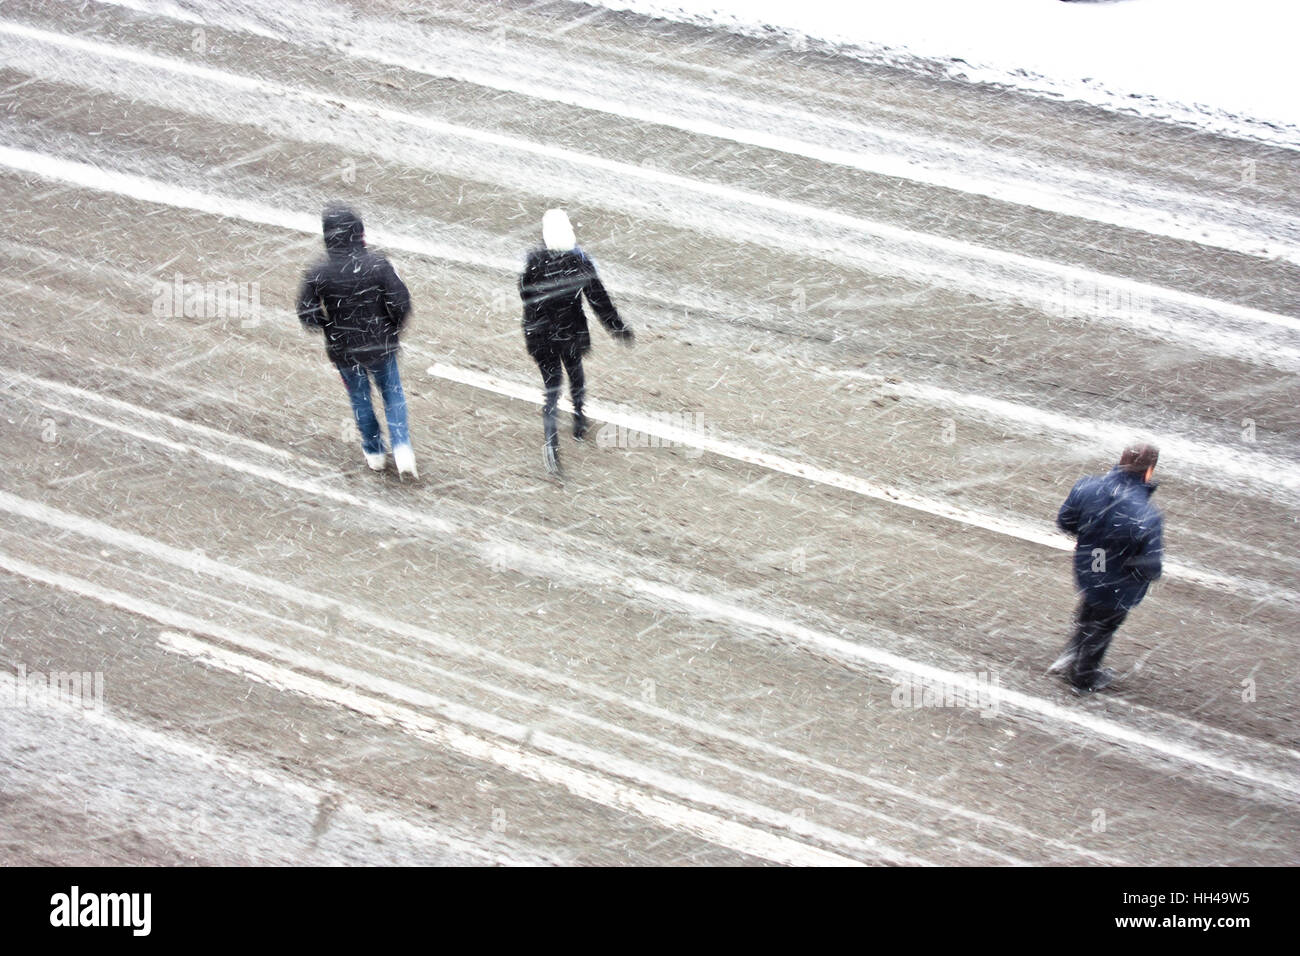 Trois personnes qui traversent le boulevard vide pendant la tempête, high angle view Banque D'Images